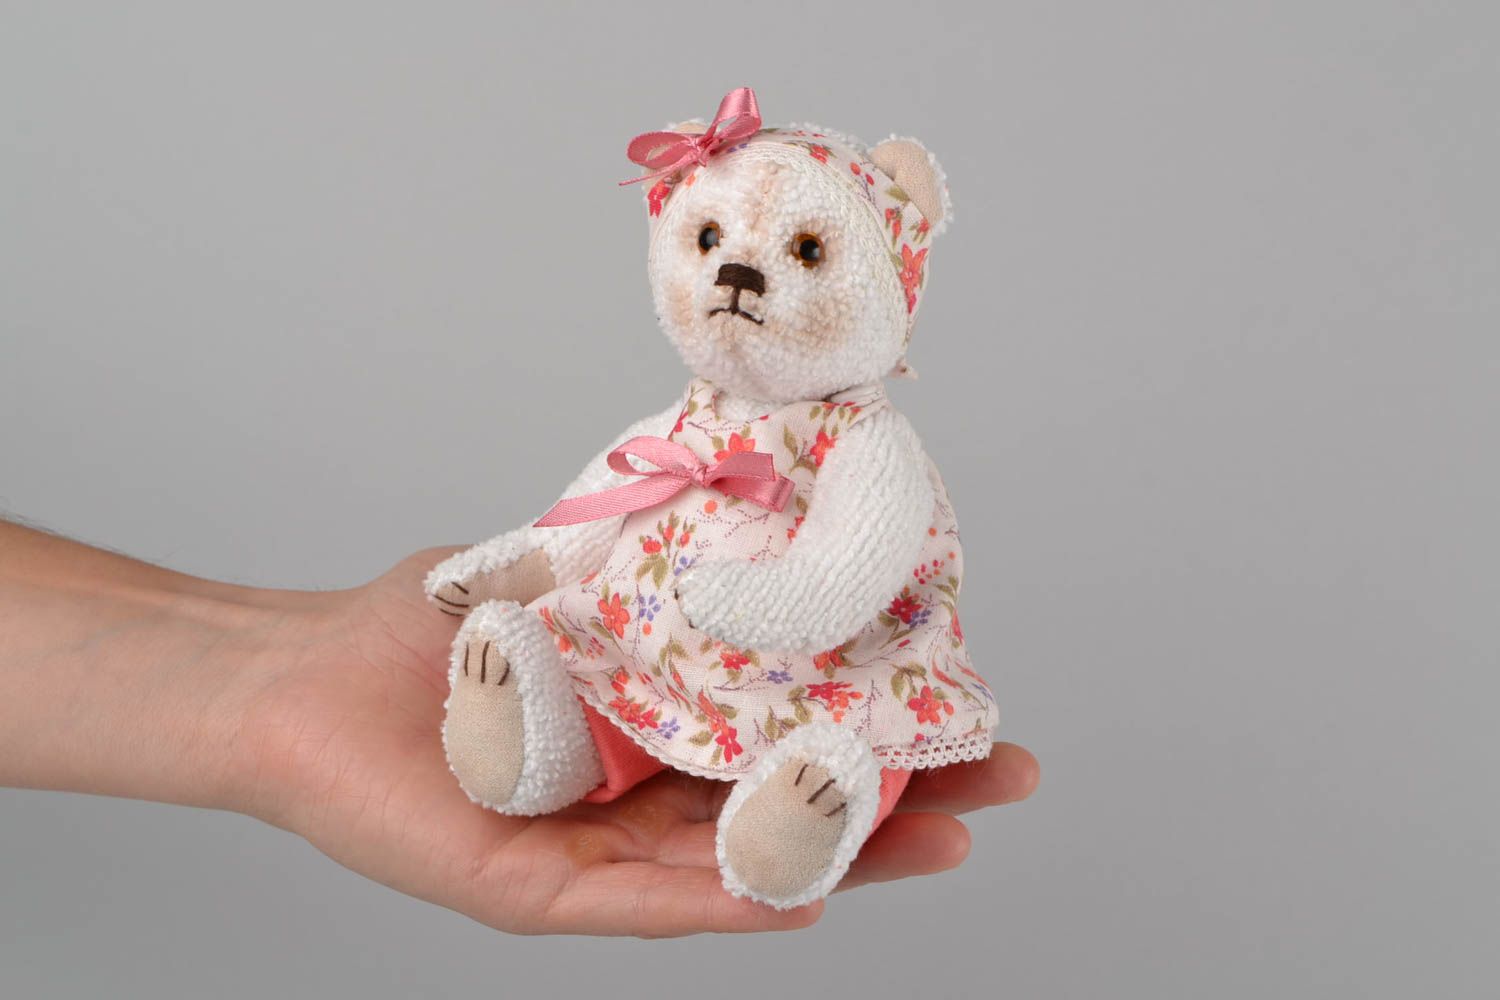 Textil Kuscheltier Bär Mädchen im blumigen Kleid handmade Schmuck für Haus Deko foto 2